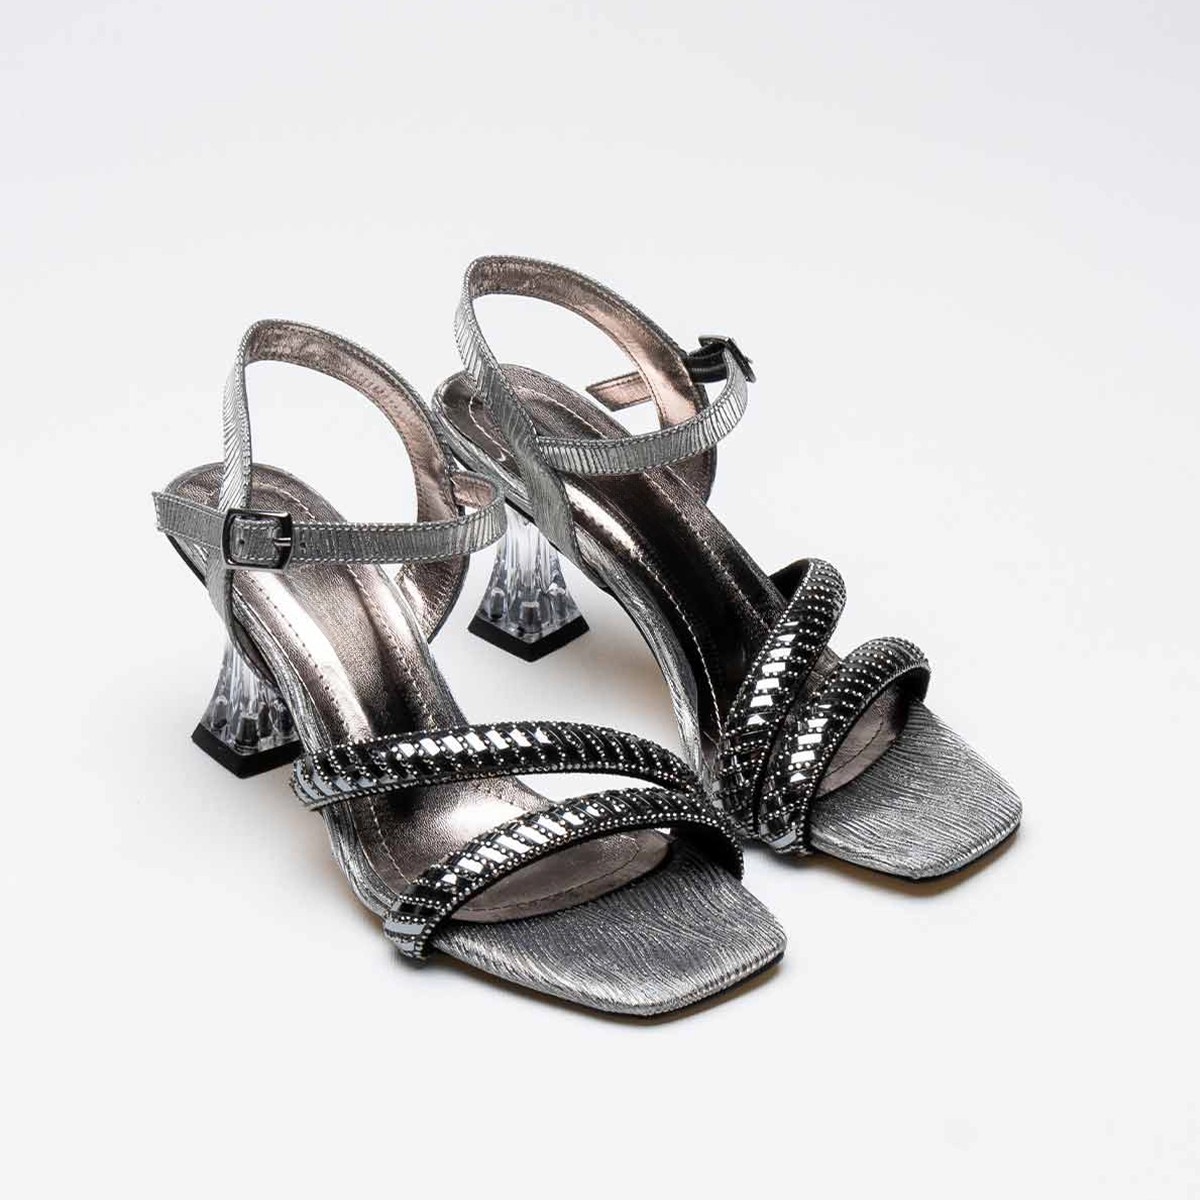 Tekstil Taşlı İnce Topuklu Ayakkabı - Platin